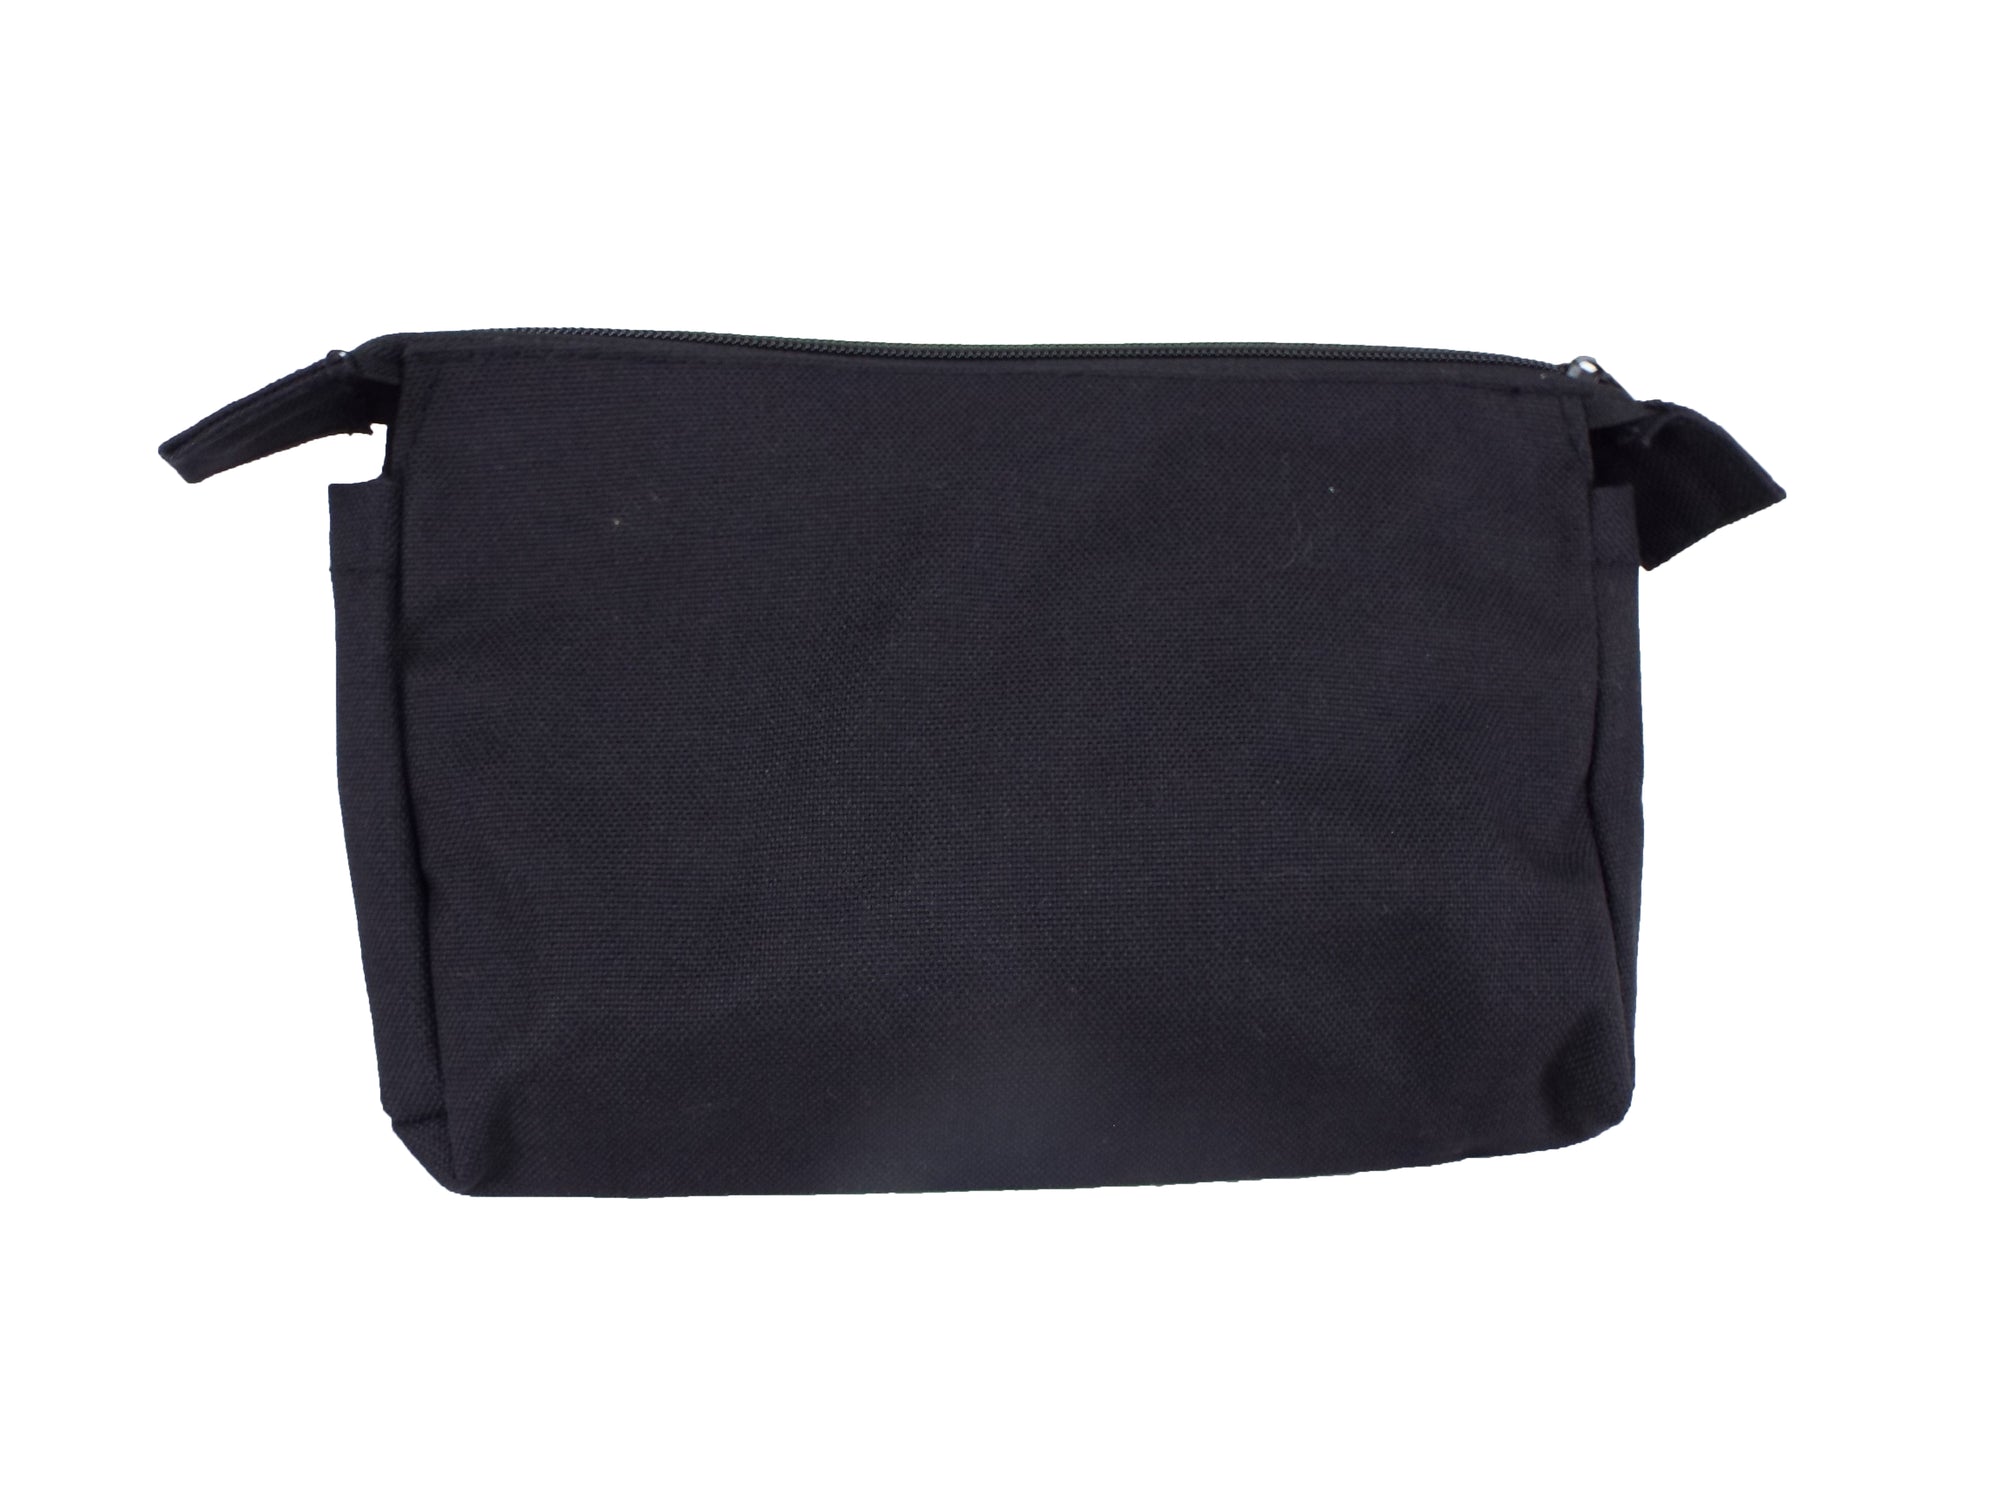 Dutch Army - Small Black Wash Bag - Grade 1